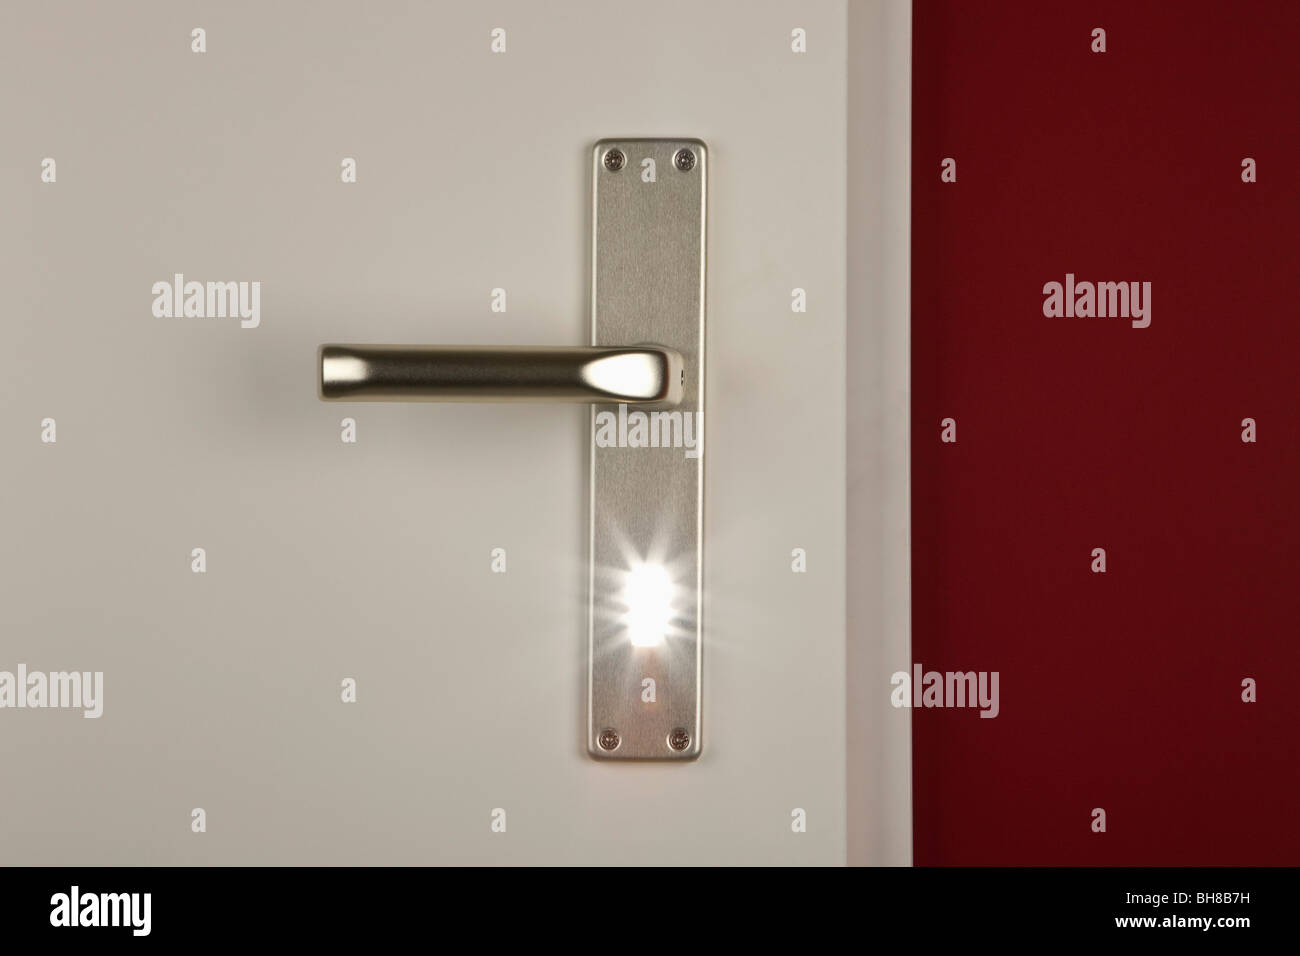 Detalle de una luz que brilla a través de la cerradura de la puerta Foto de stock